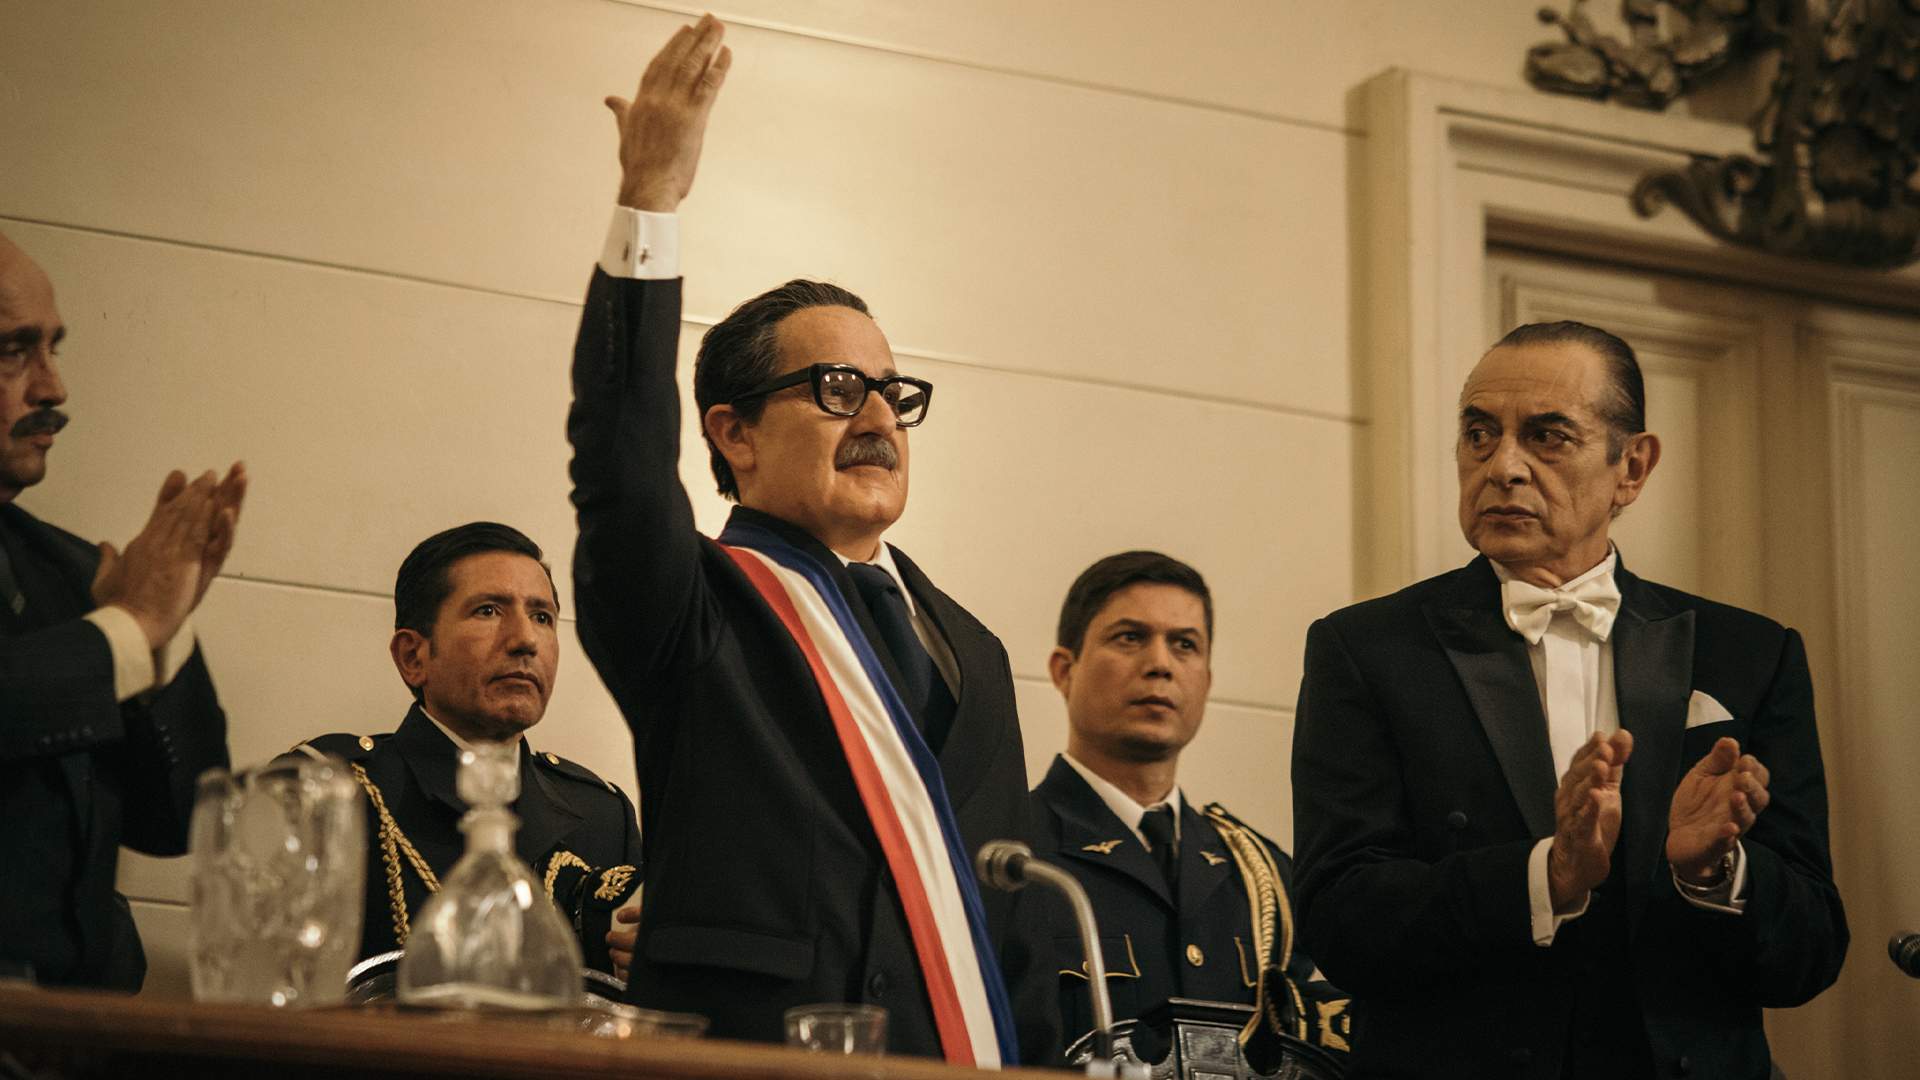 Alfredo Castro et Tito Bustamante dans Los Mil Días de Allende